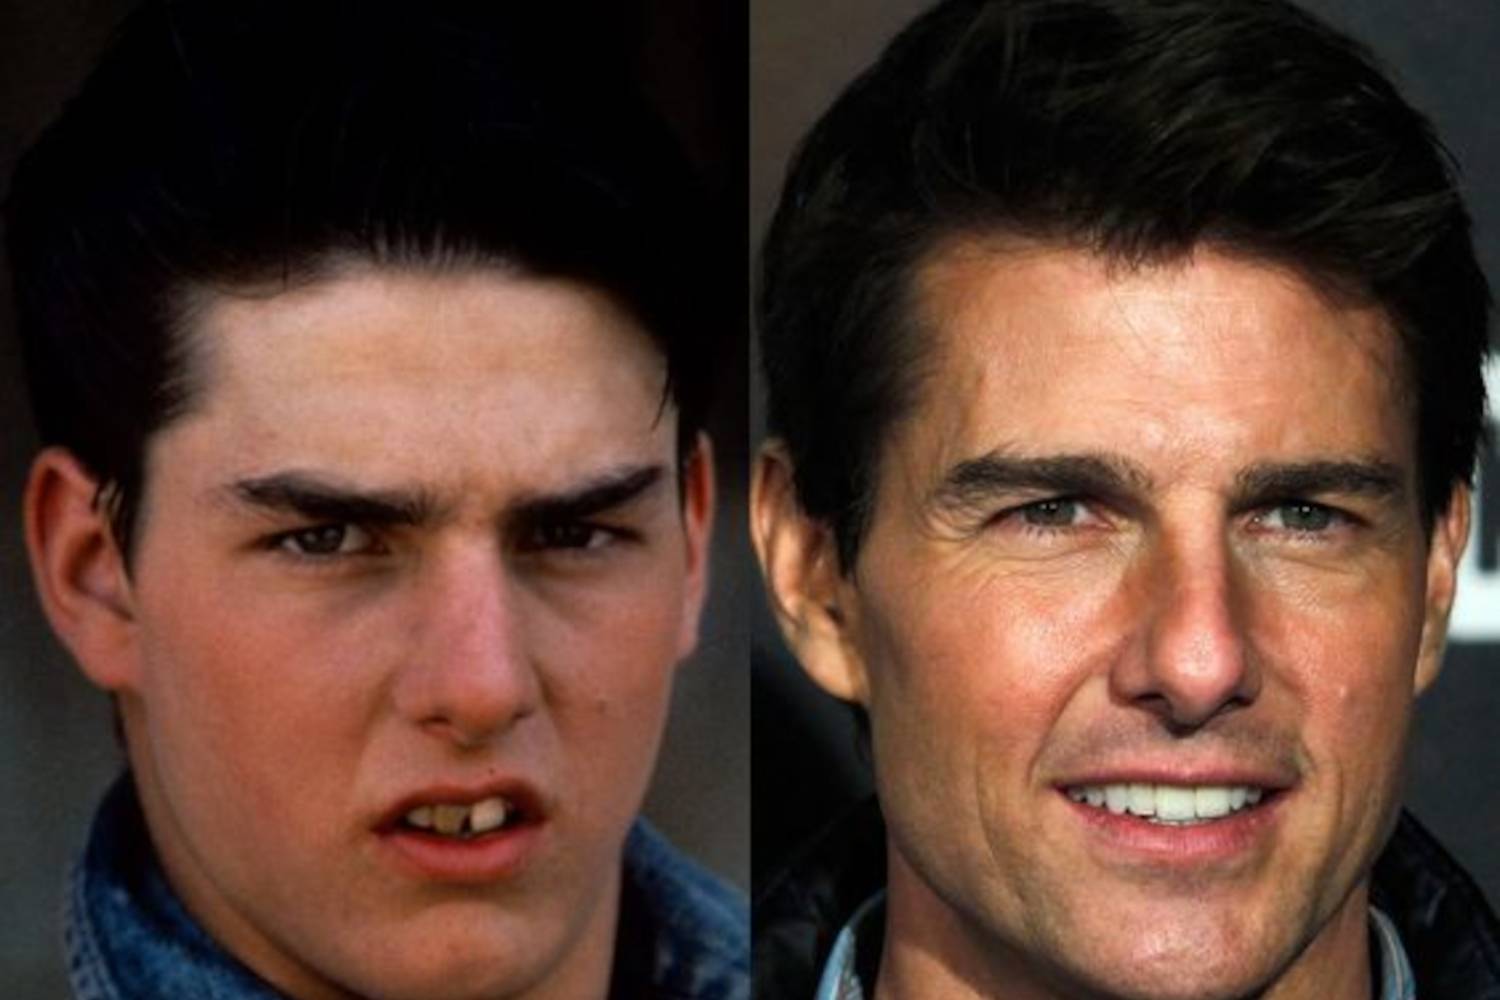 Tom Cruise fogai karrierje kezdetén még kuszák voltak, ahogy azonban egyre jobban befutott, megcsináltatta mosolyát, és ma már vakítóan fehér, tökéletes fogsorral hódít.